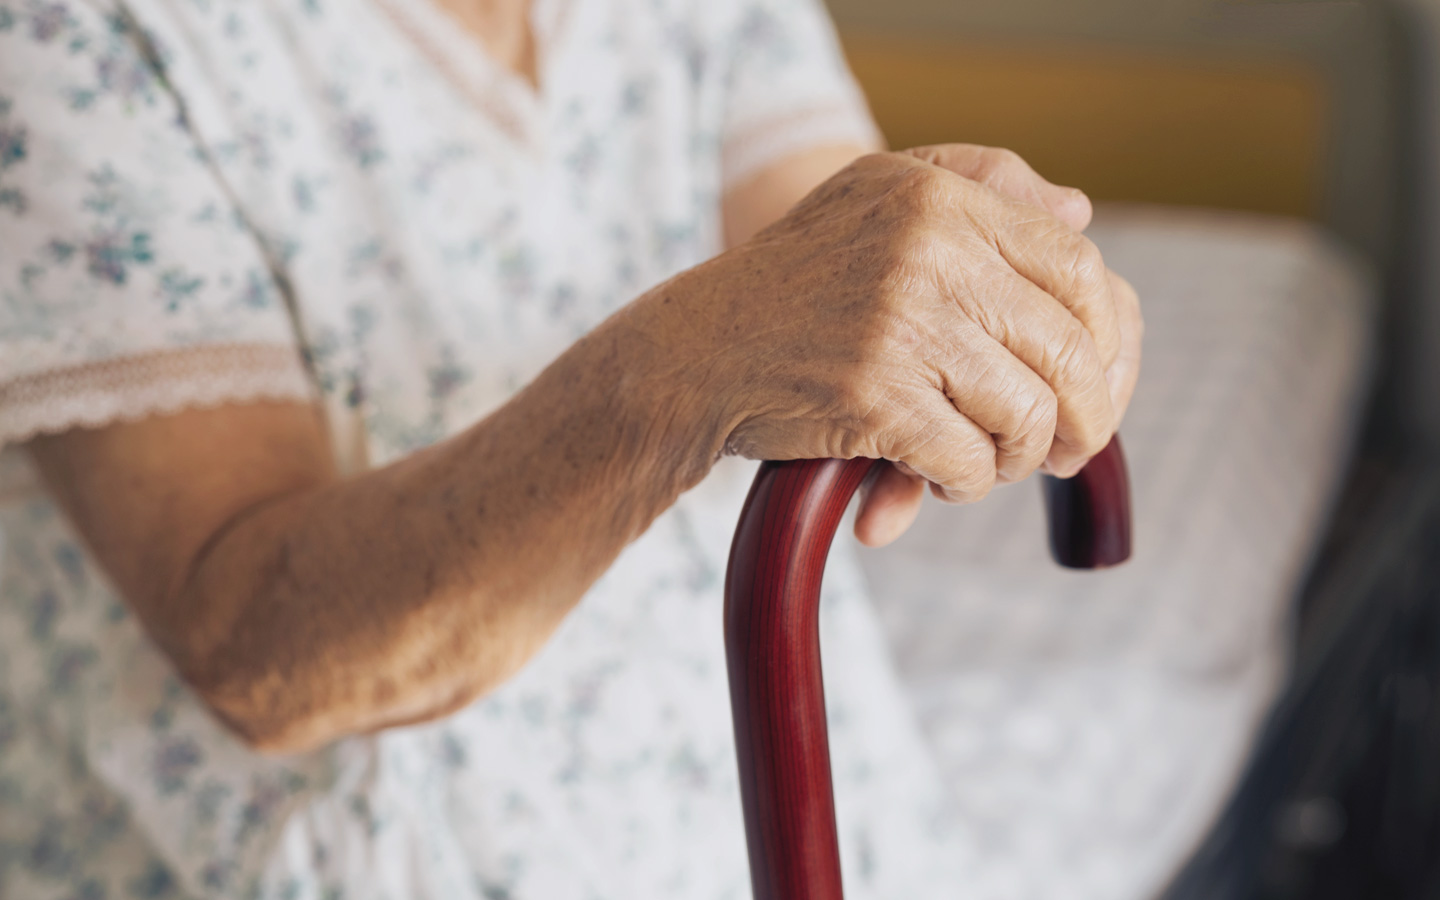 Foto: Nahaufnahme der Hand einer ältere Person, sie sitzt auf einer Bettkante und hält einen Gehstock